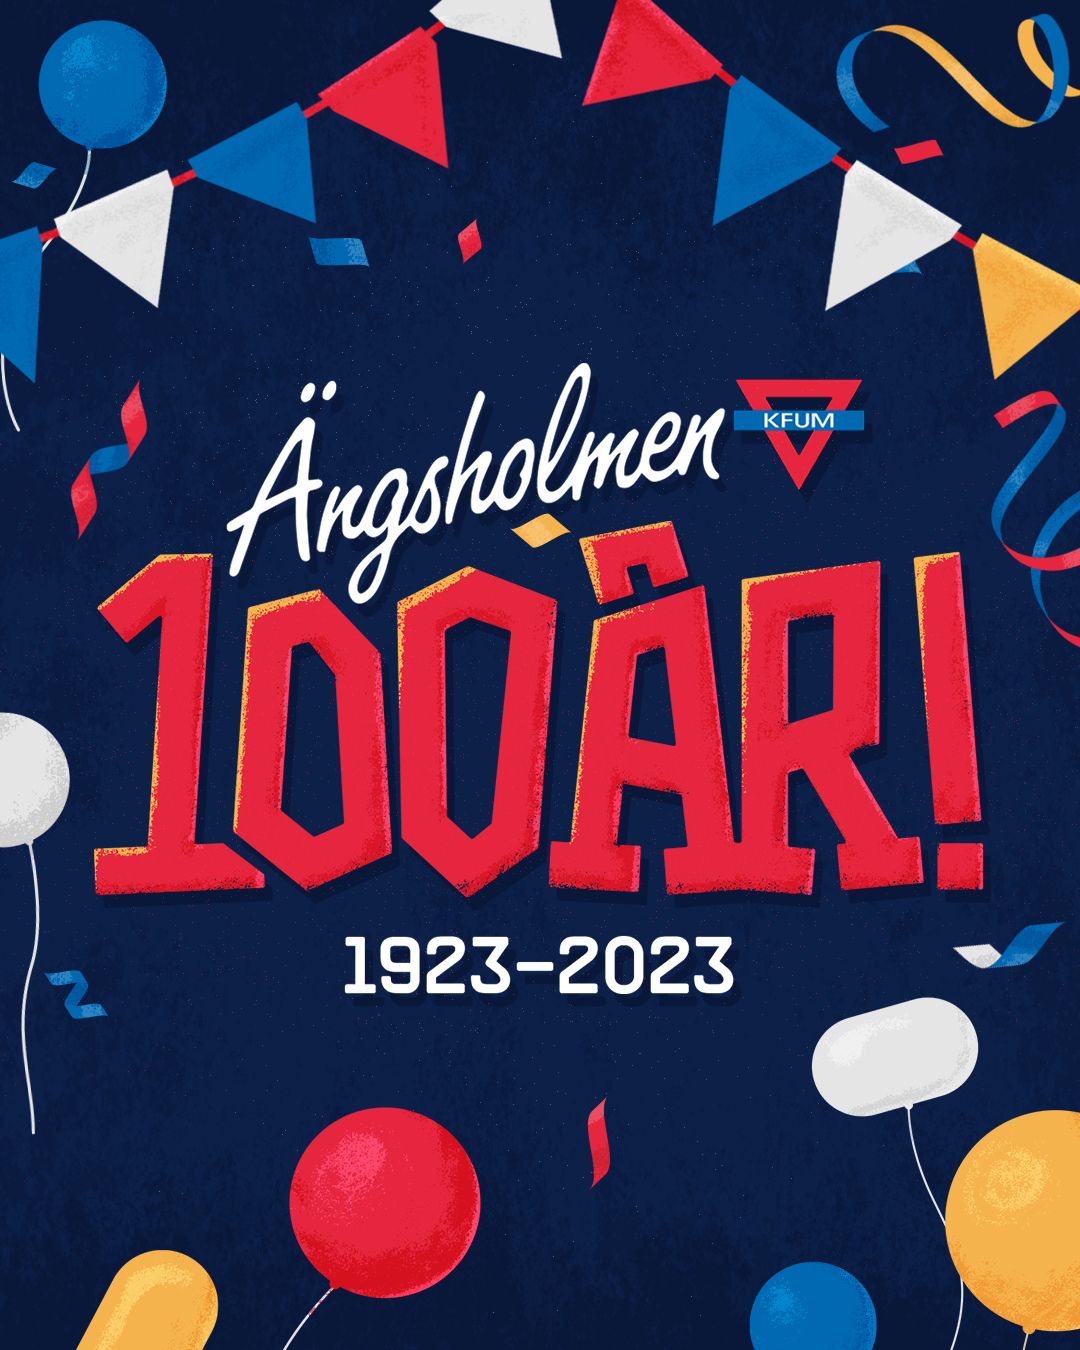 KFUM Ängsholmen 100 år! 1923-2023